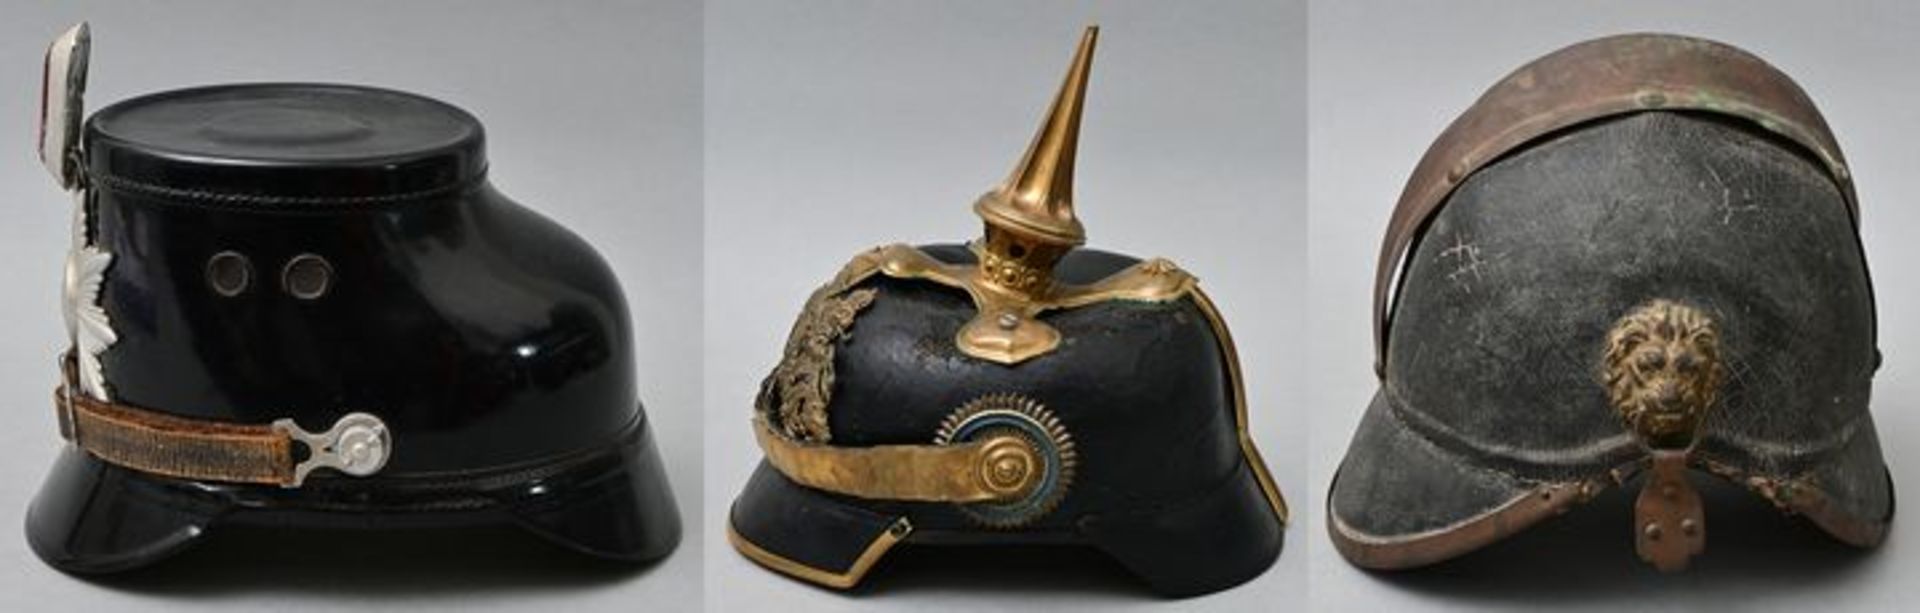 Konvolut Helme/ three helmets - Image 2 of 3